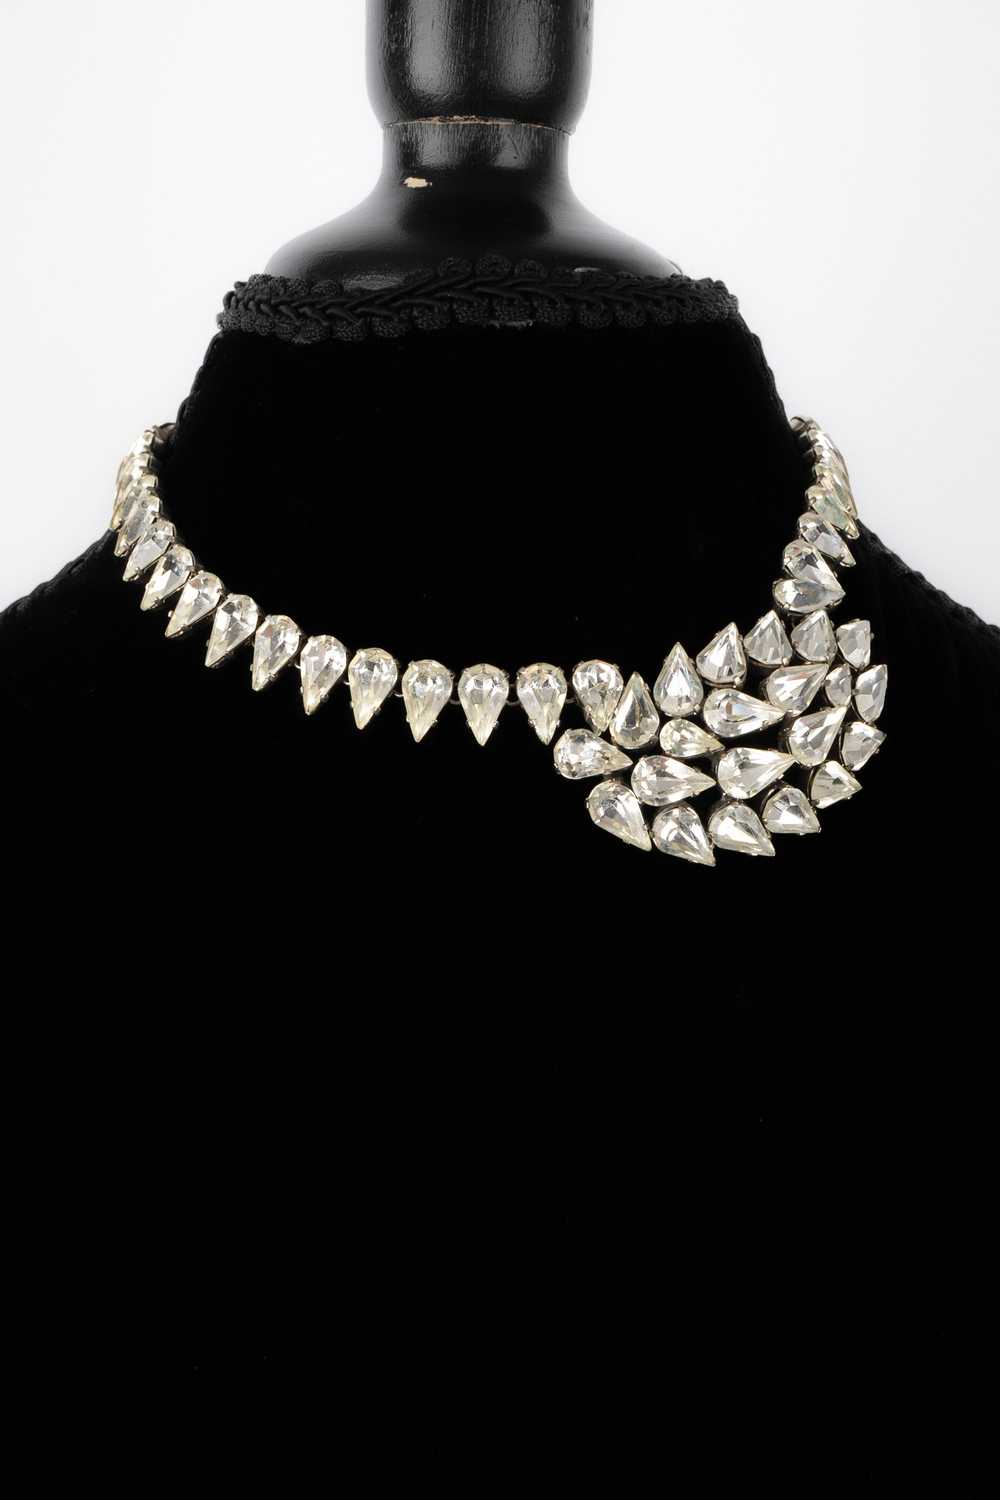 Viintage rhinestoned necklace - image 3